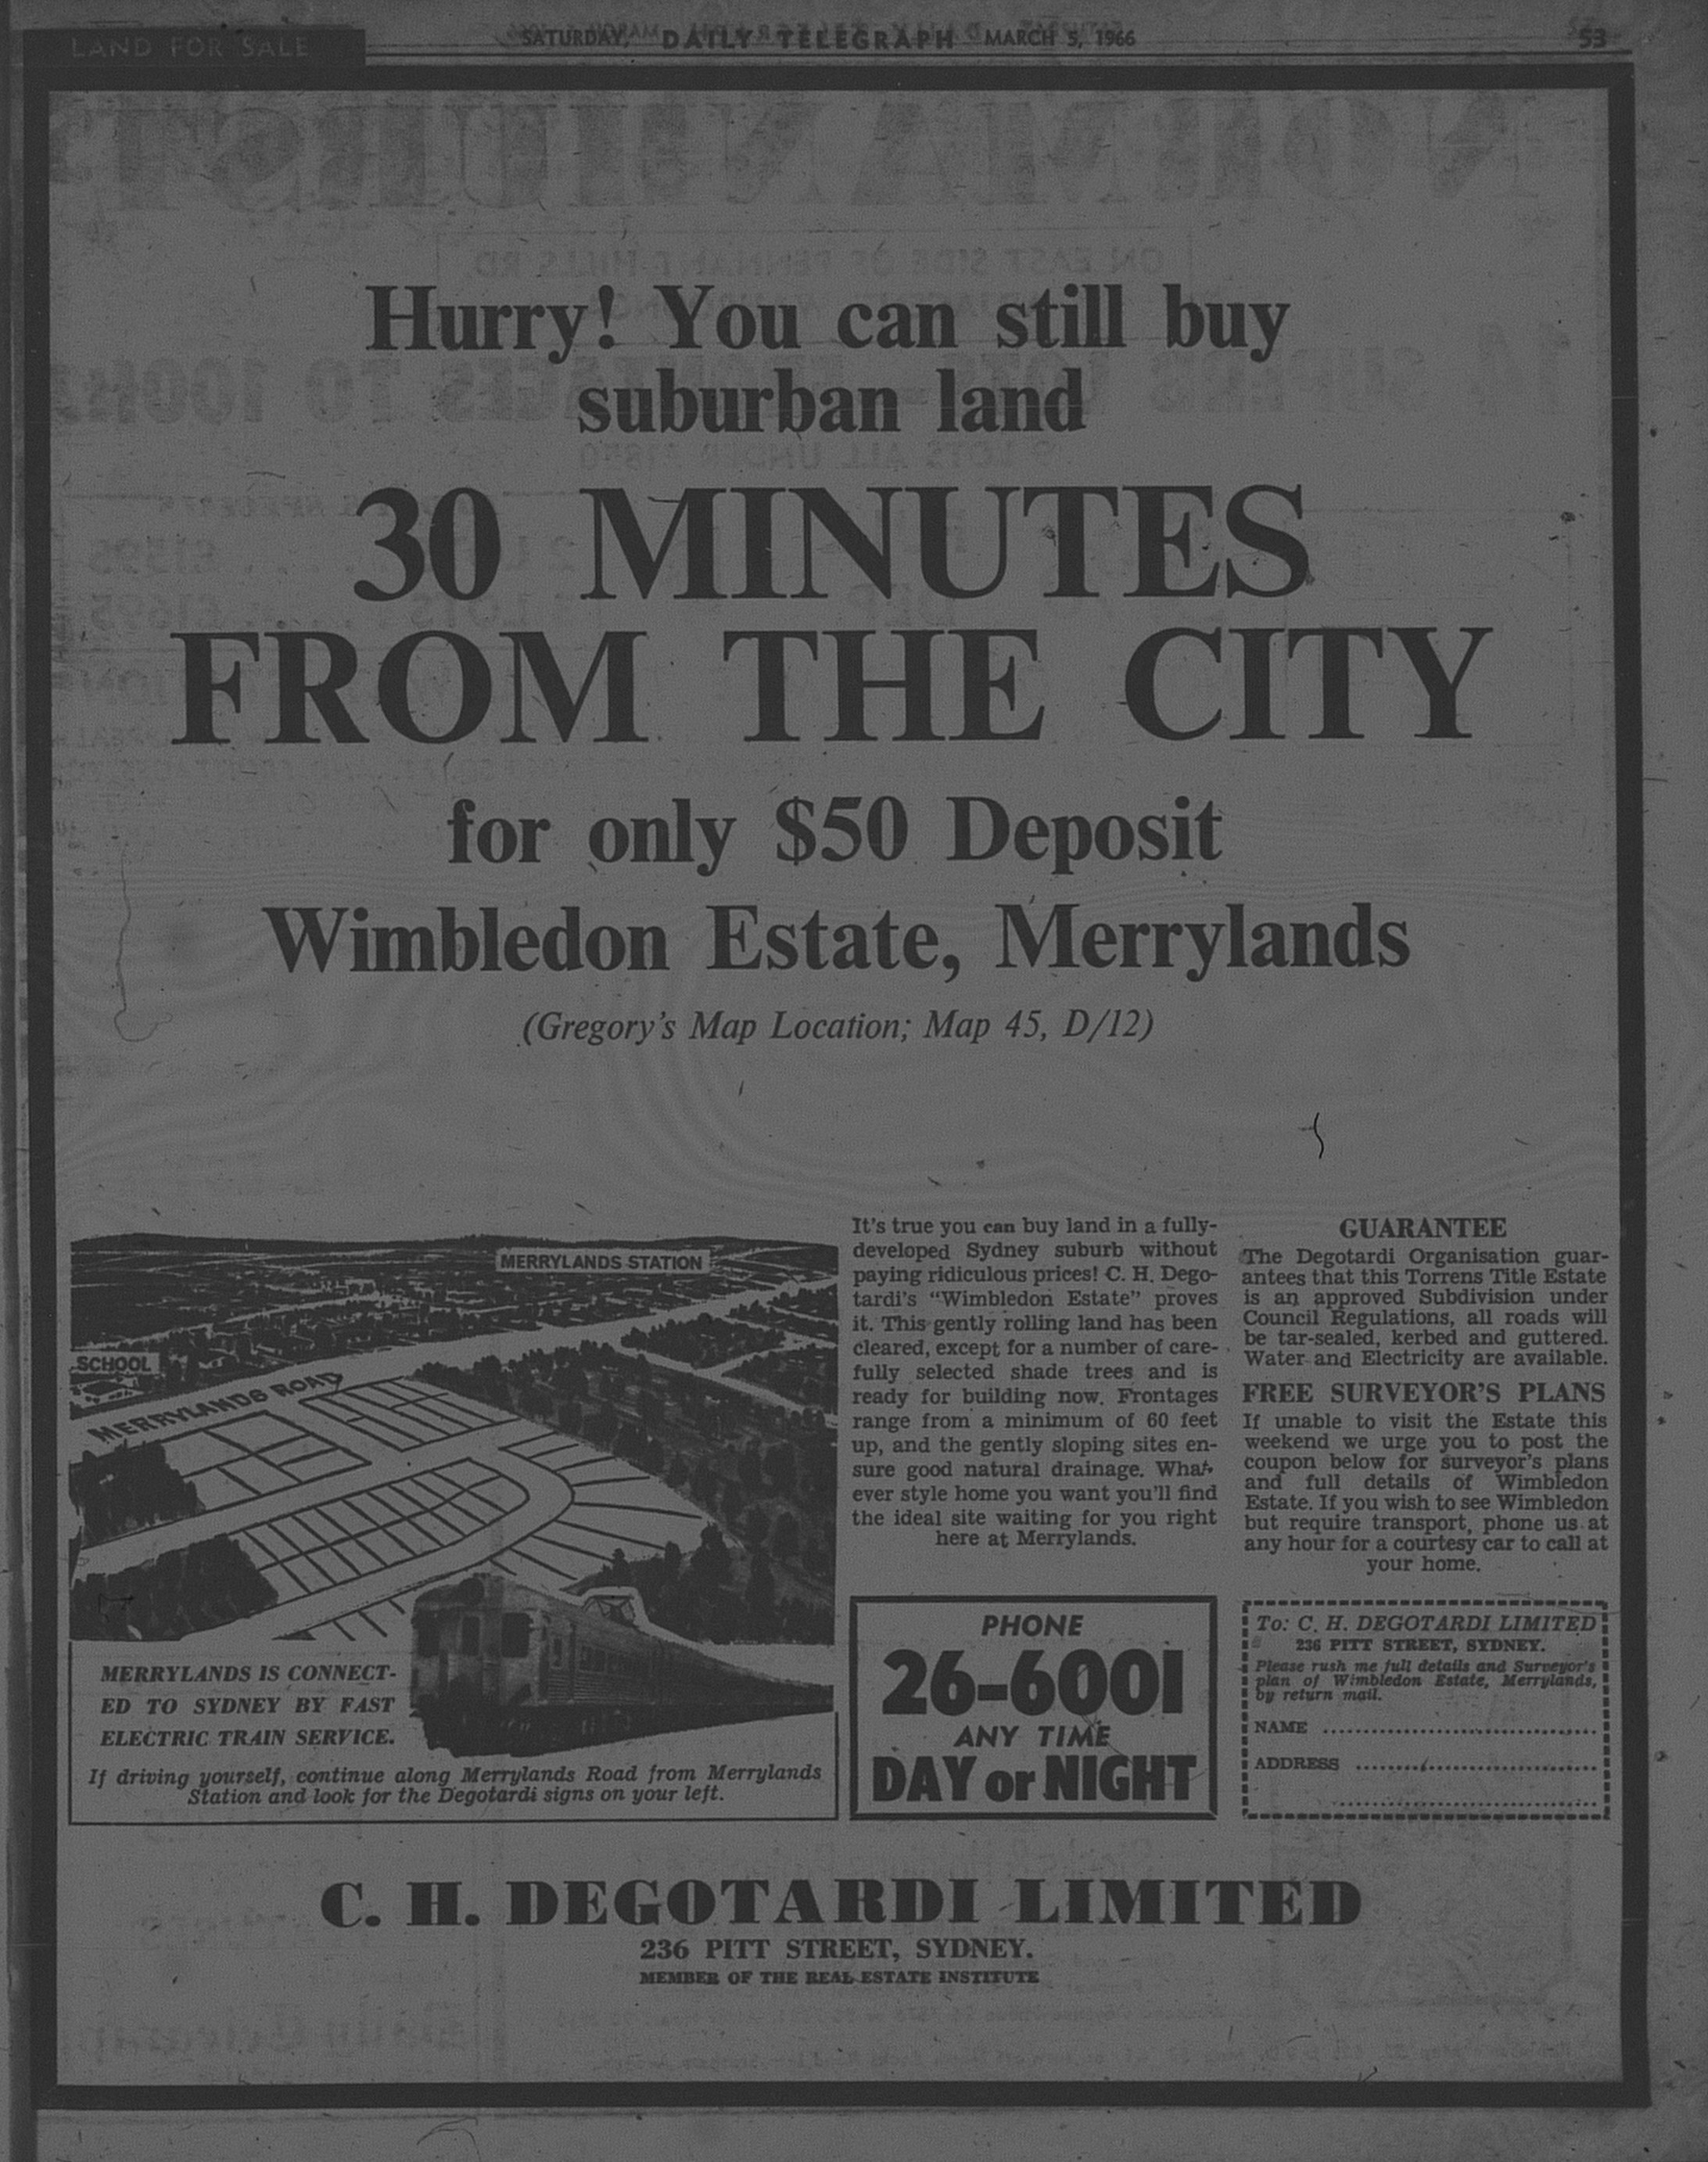 Wimbeldon Merrylands March 5 1966 daily telegraph 53